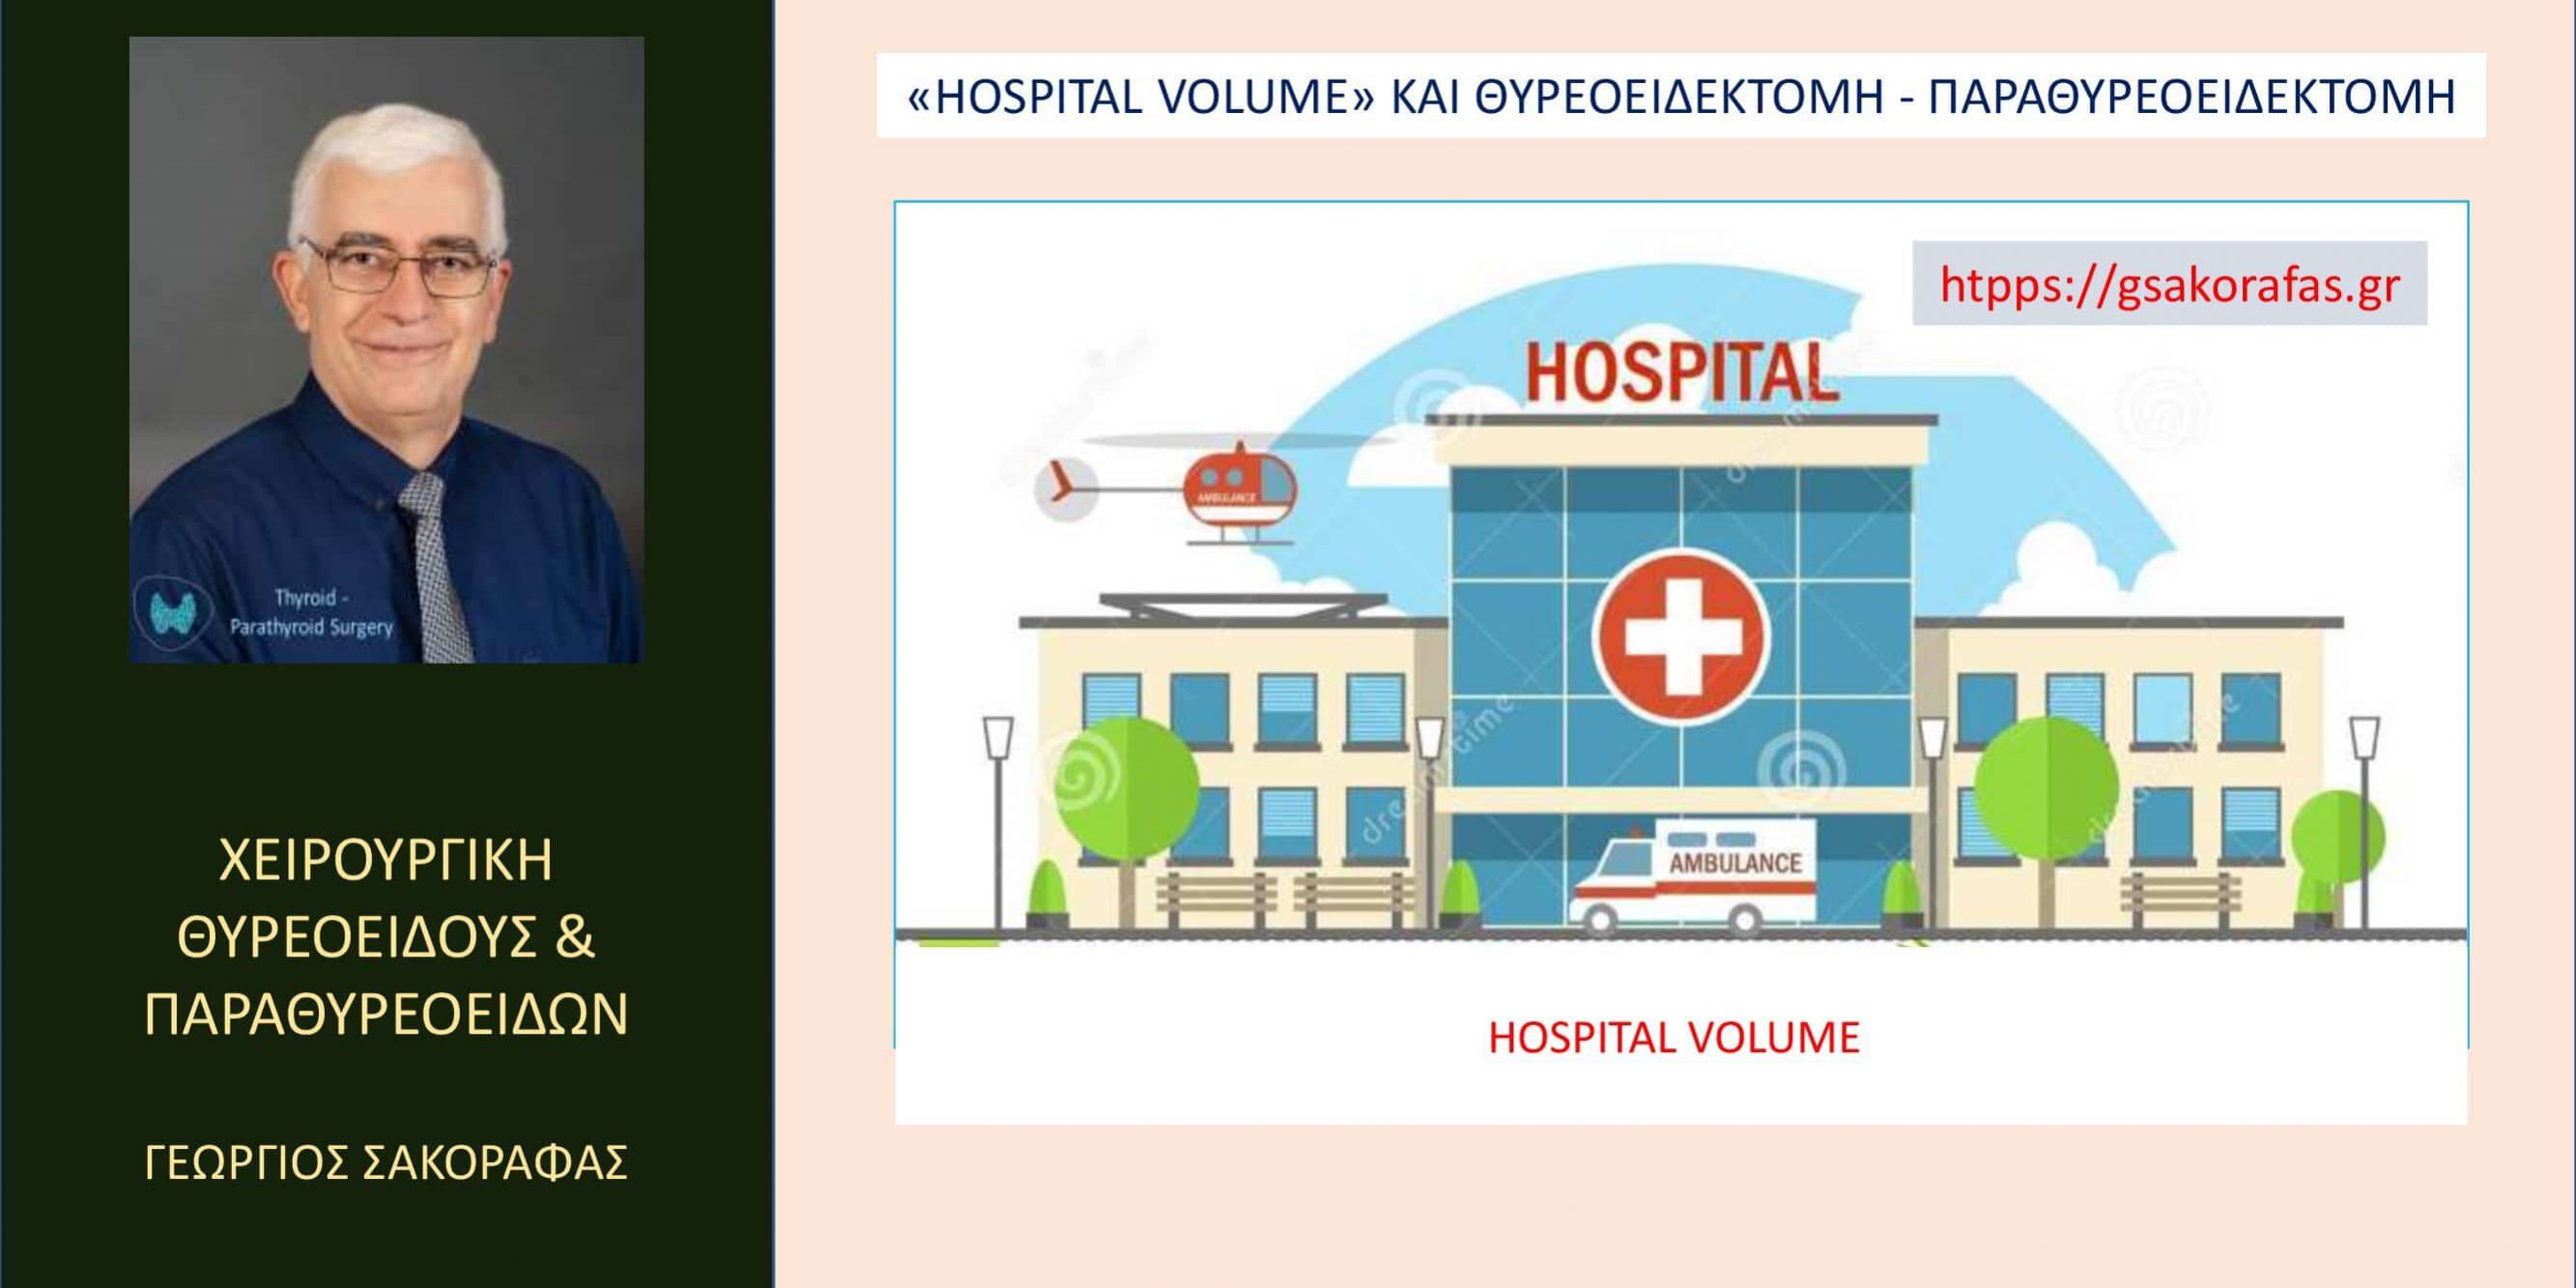 Θυρεοειδεκτομή – παραθυρεοειδεκτομή και η παράμετρος “Hospital Volume” – Τι είναι? Ποια η πρακτική της σημασία ειδικά στις επεμβάσεις θυρεοειδούς & παραθυρεοειδών?